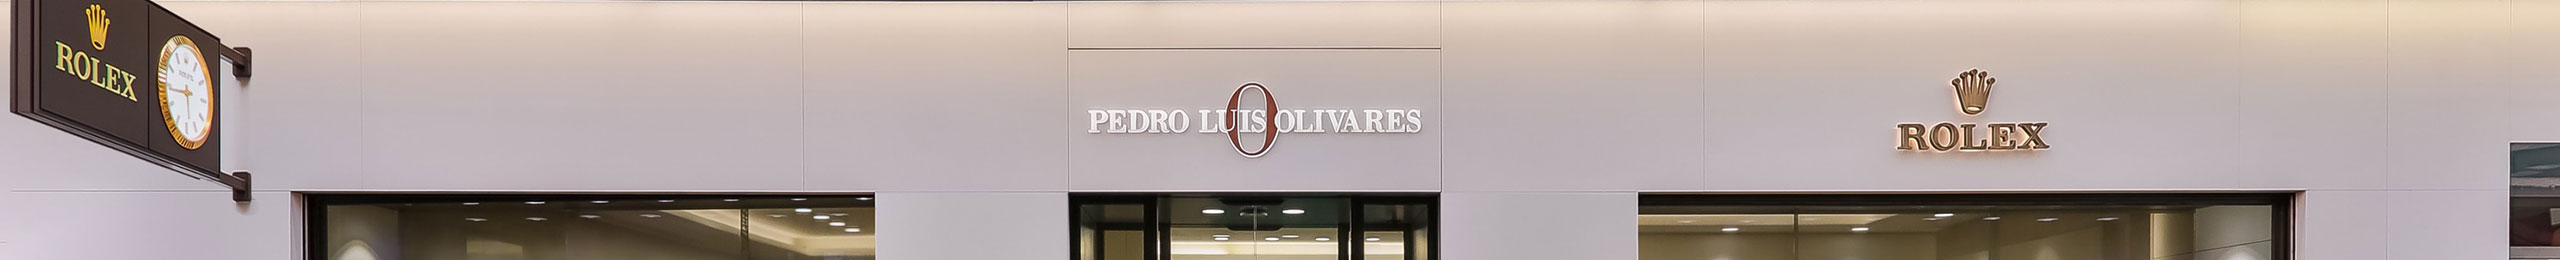 Fachada Joyería Distribuidor Oficial Rolex - Pedro Luis Olivares Joyero en Murcia